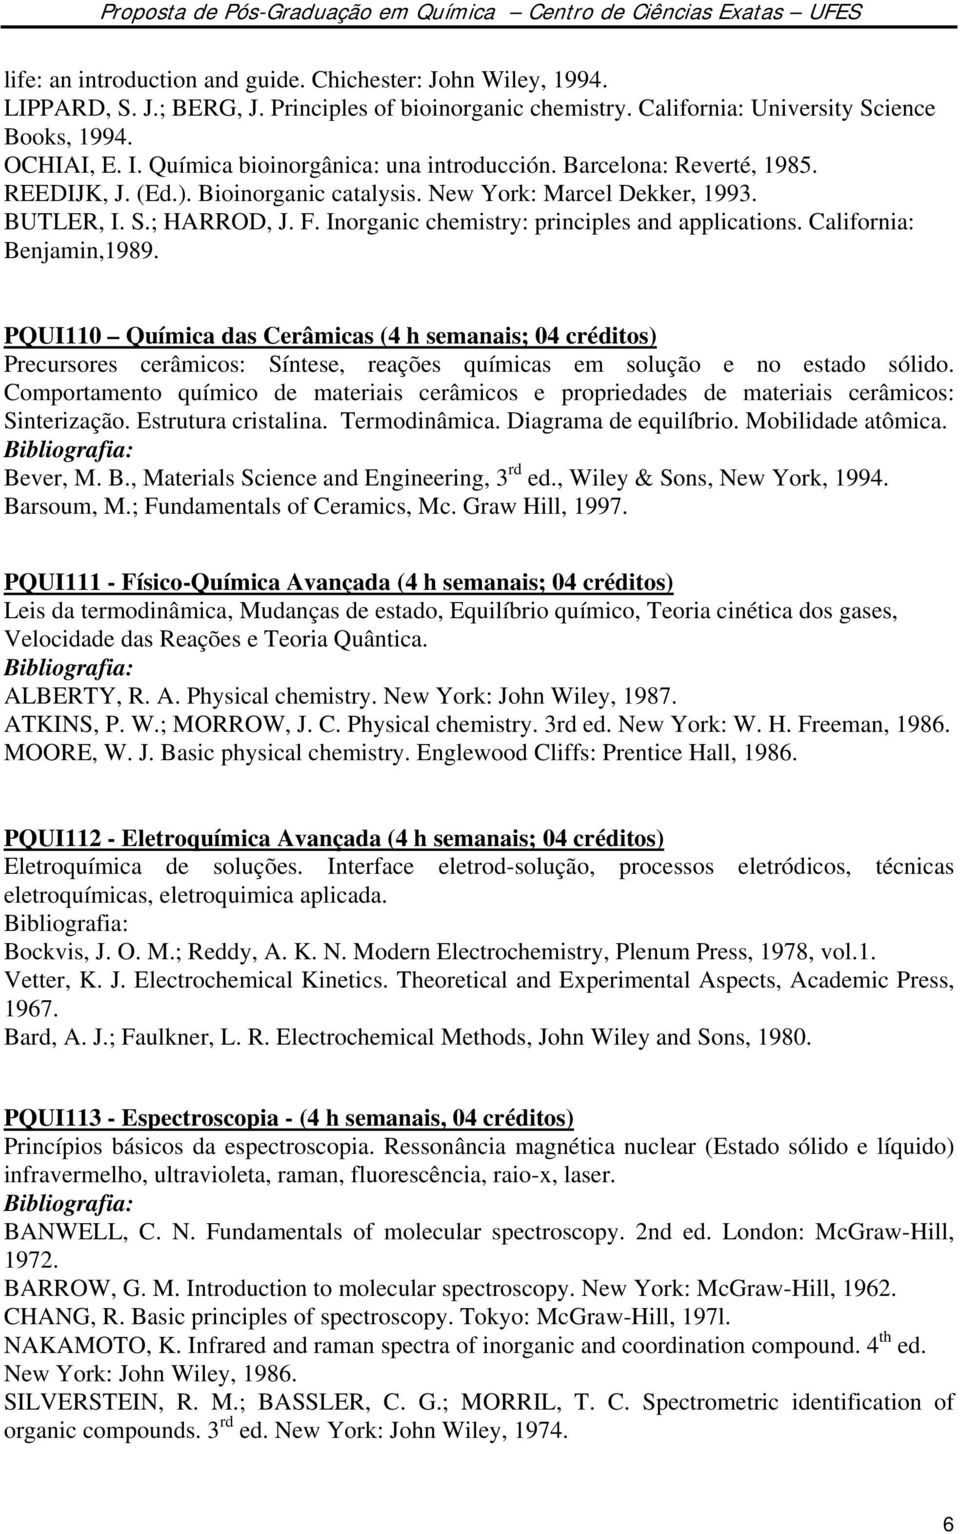 Inorganic chemistry: principles and applications. California: Benjamin,1989.